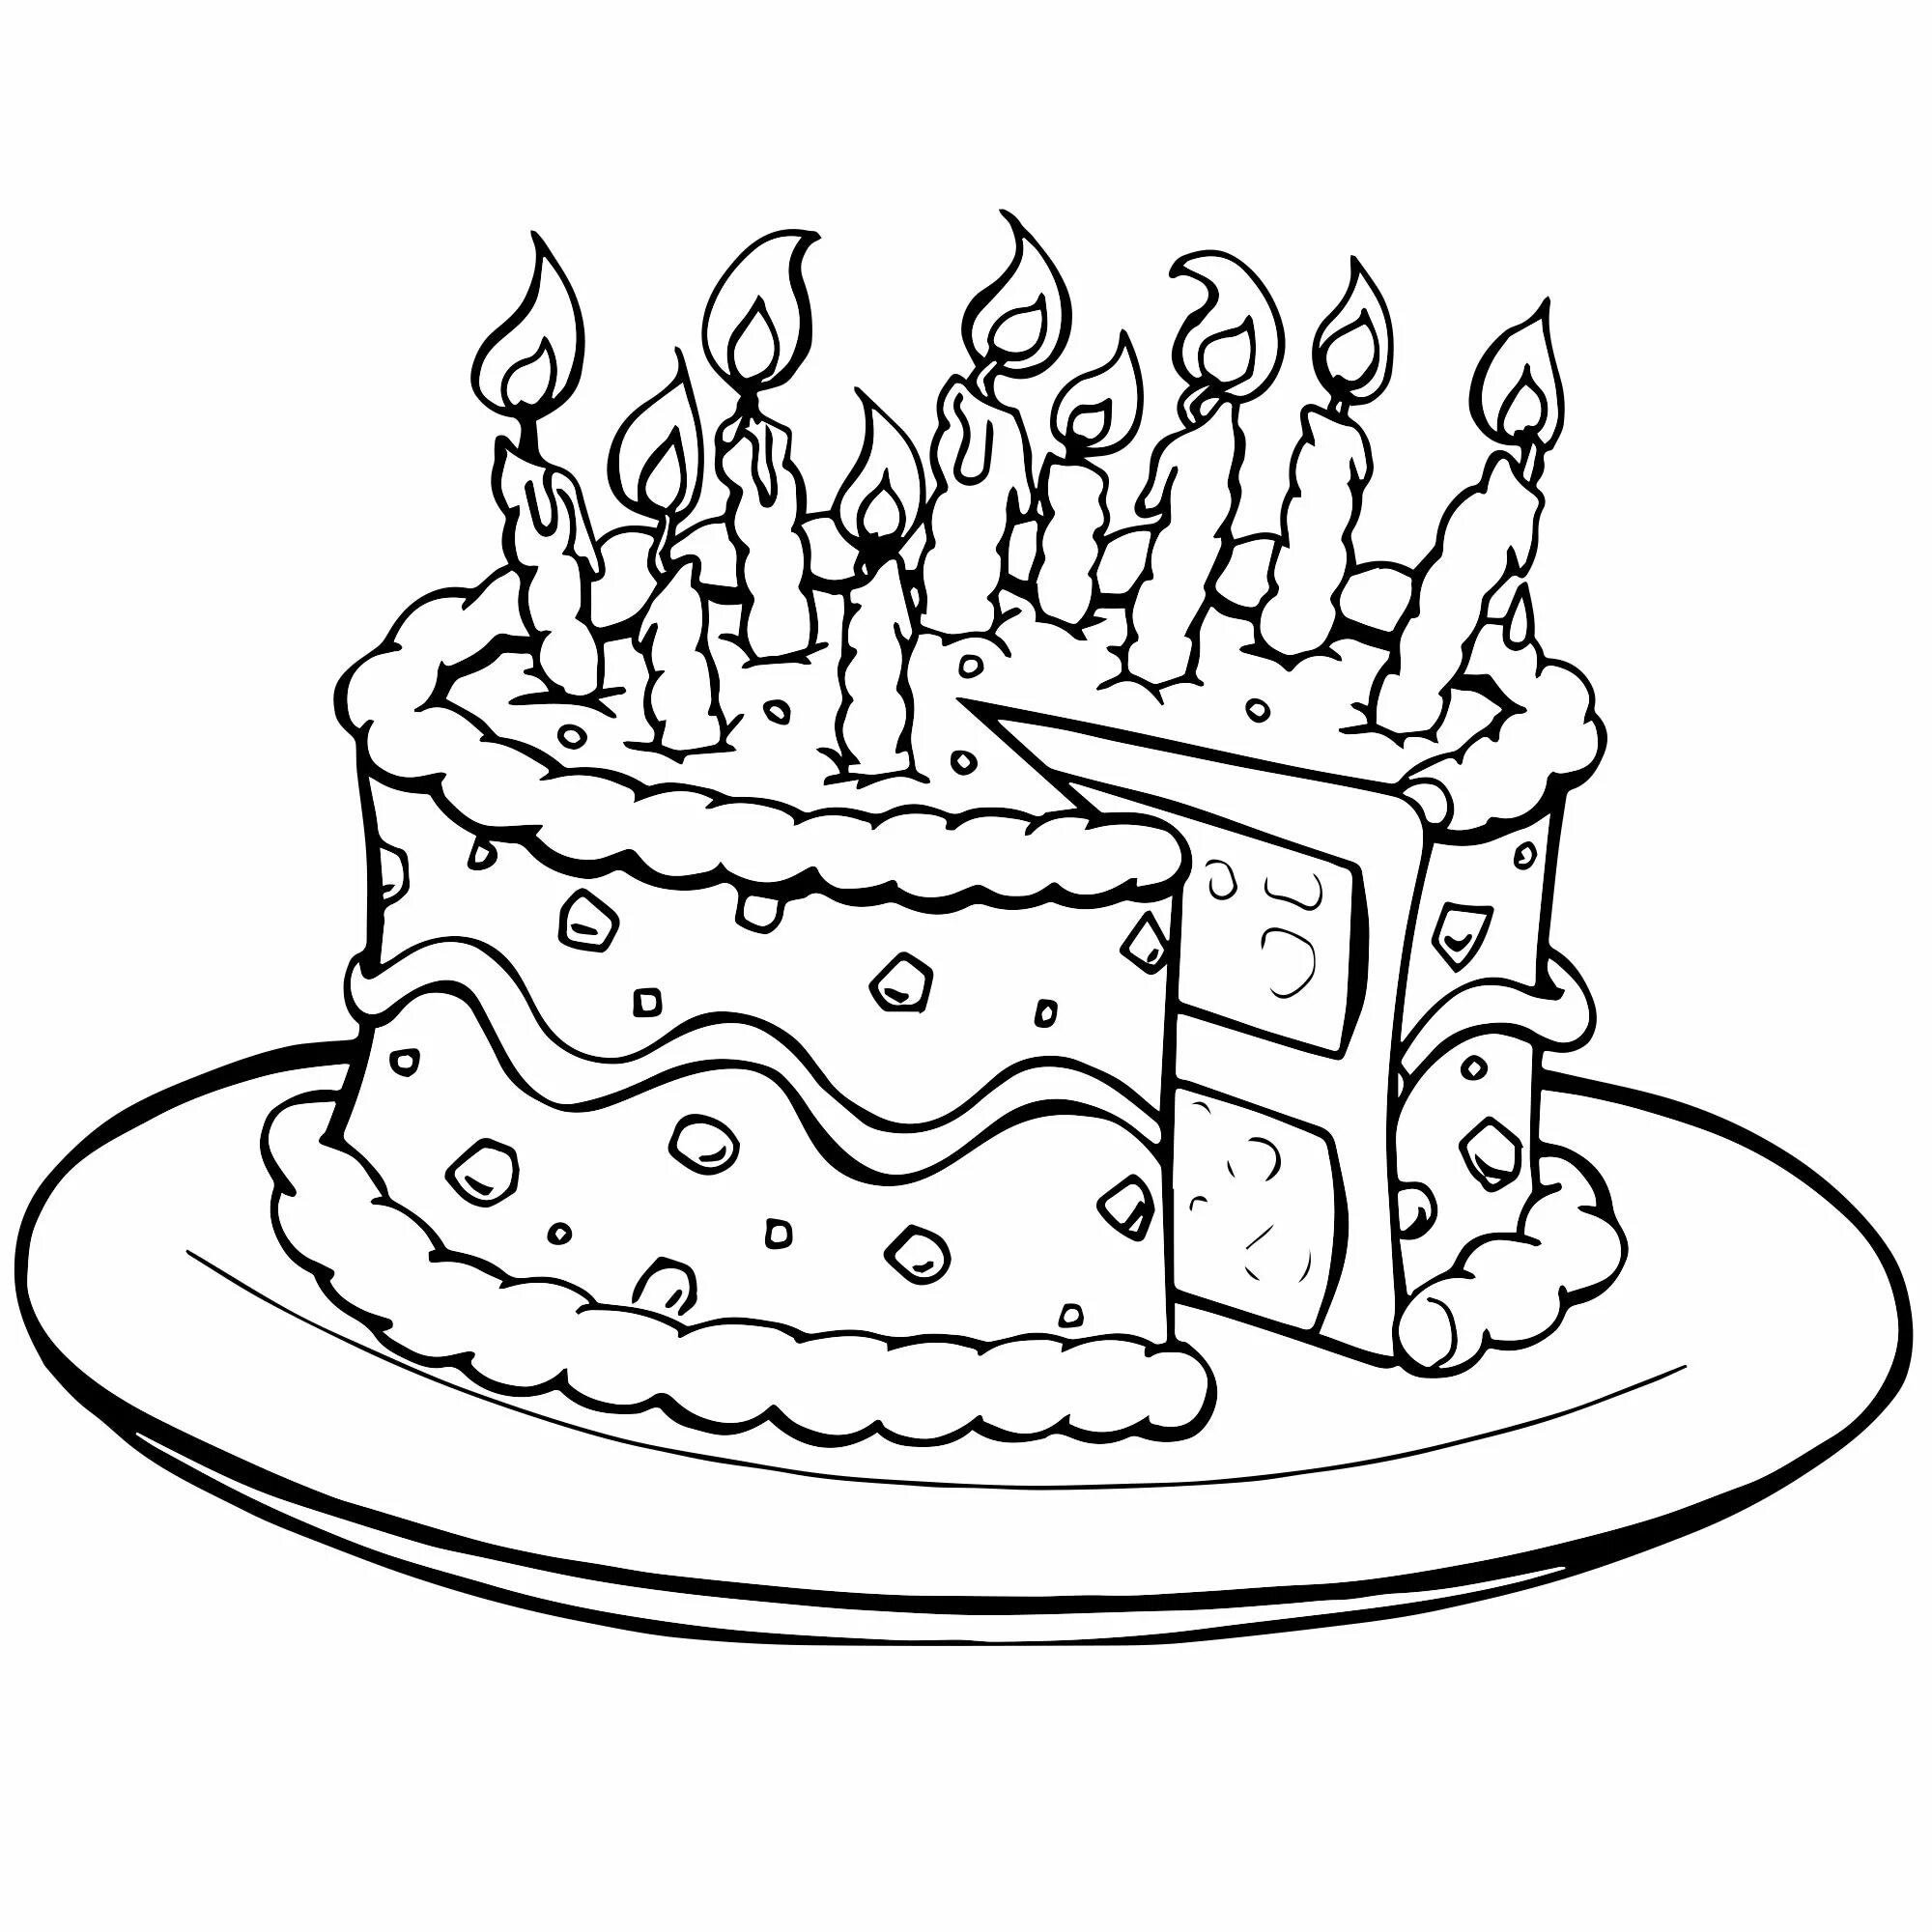 Раскраска торт ко дню рождения, взрывающийся цветом